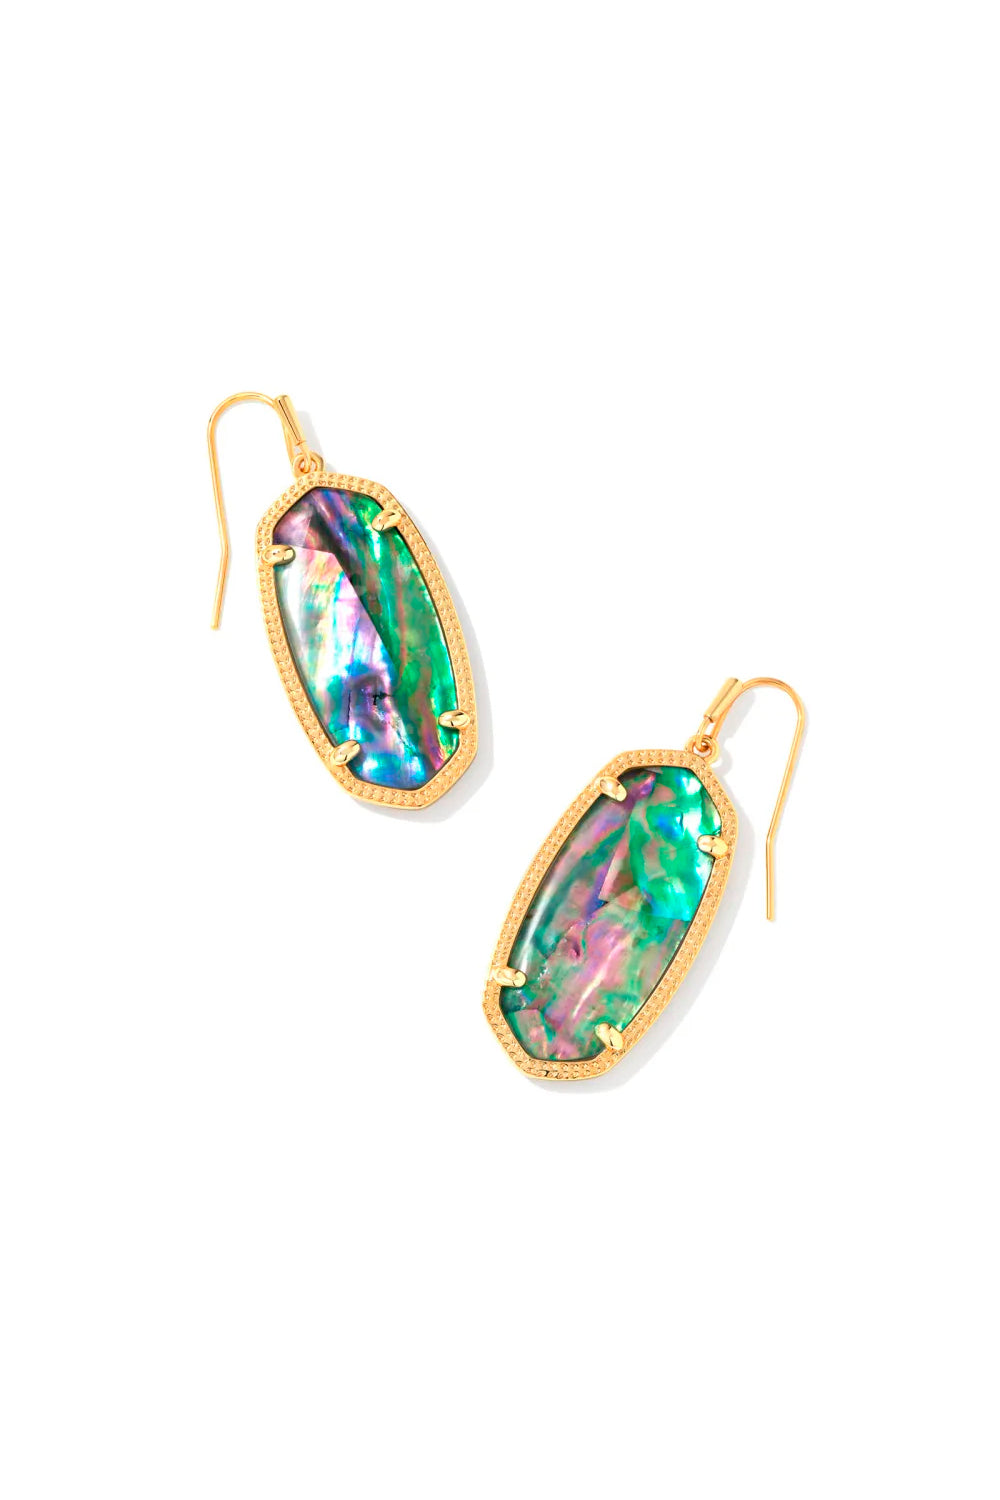 Kendra Scott: Elle Gold Drop Earrings - Lilac Abalone | Makk Fashions